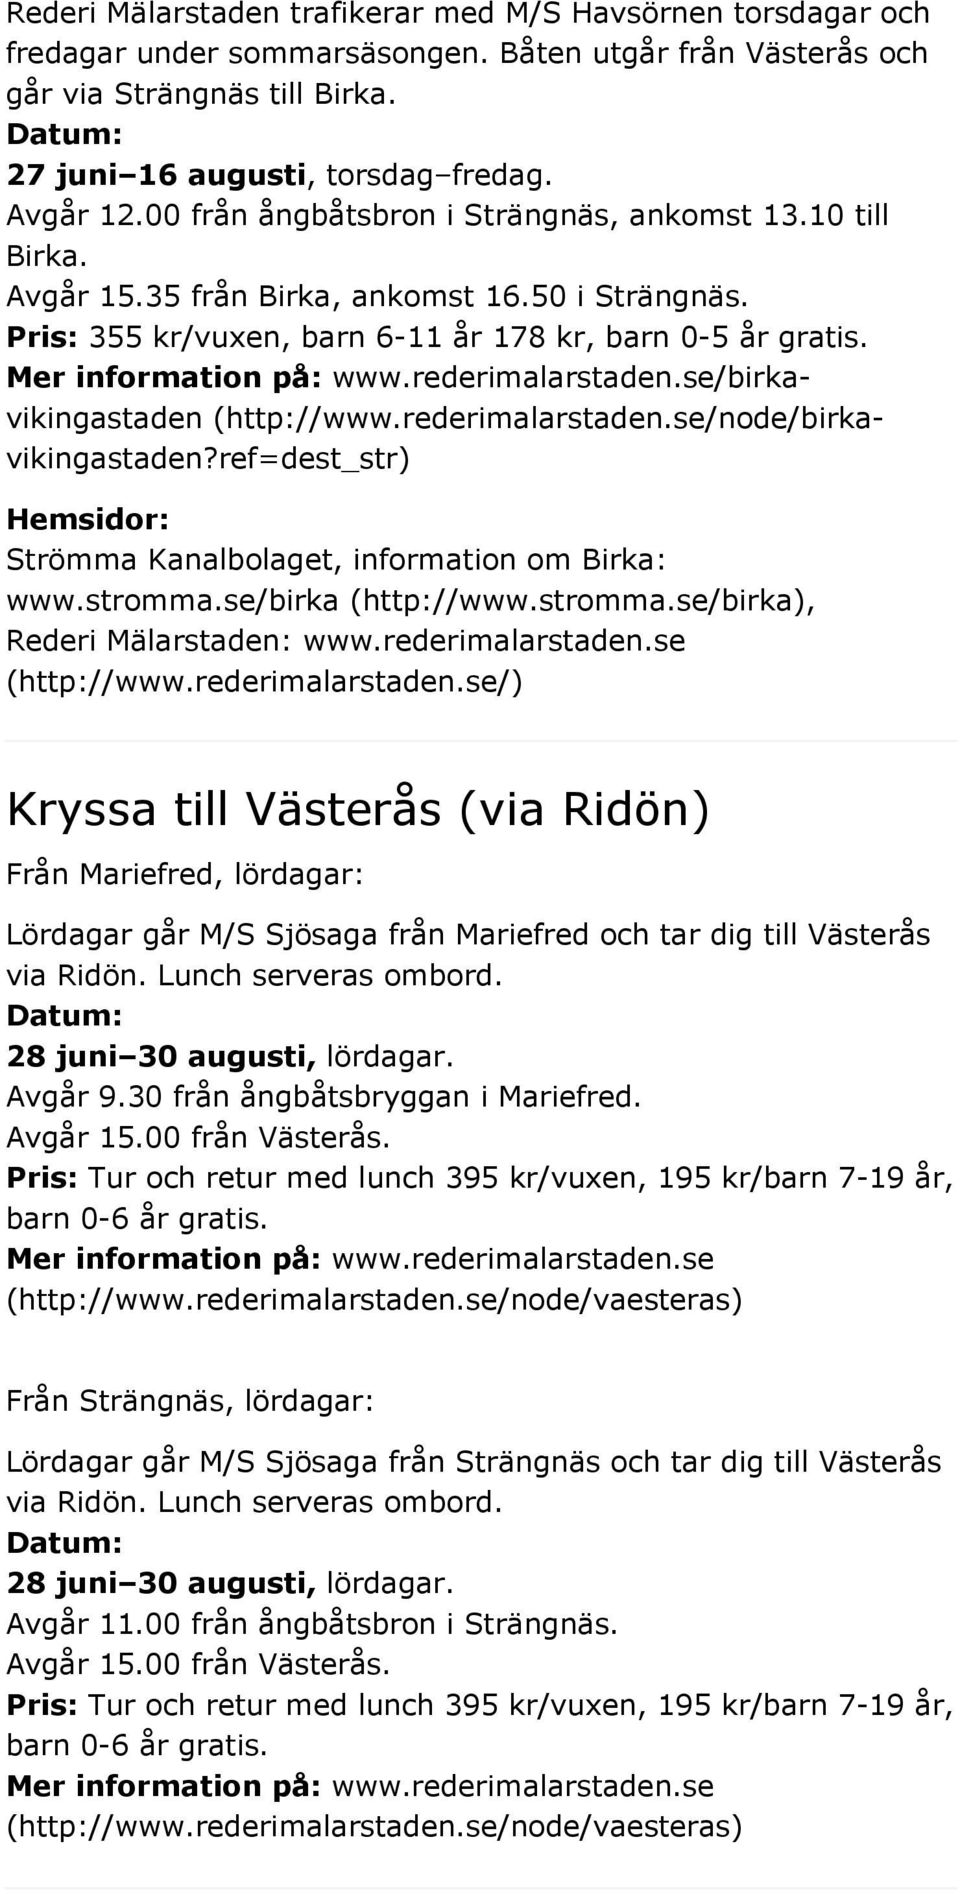 /birkavikingastaden (http://www.rederimalarstaden.se/node/birkavikingastaden?ref=dest_str) Hemsidor: Strömma Kanalbolaget, information om Birka: www.stromma.se/birka (http://www.stromma.se/birka), Rederi Mälarstaden: www.